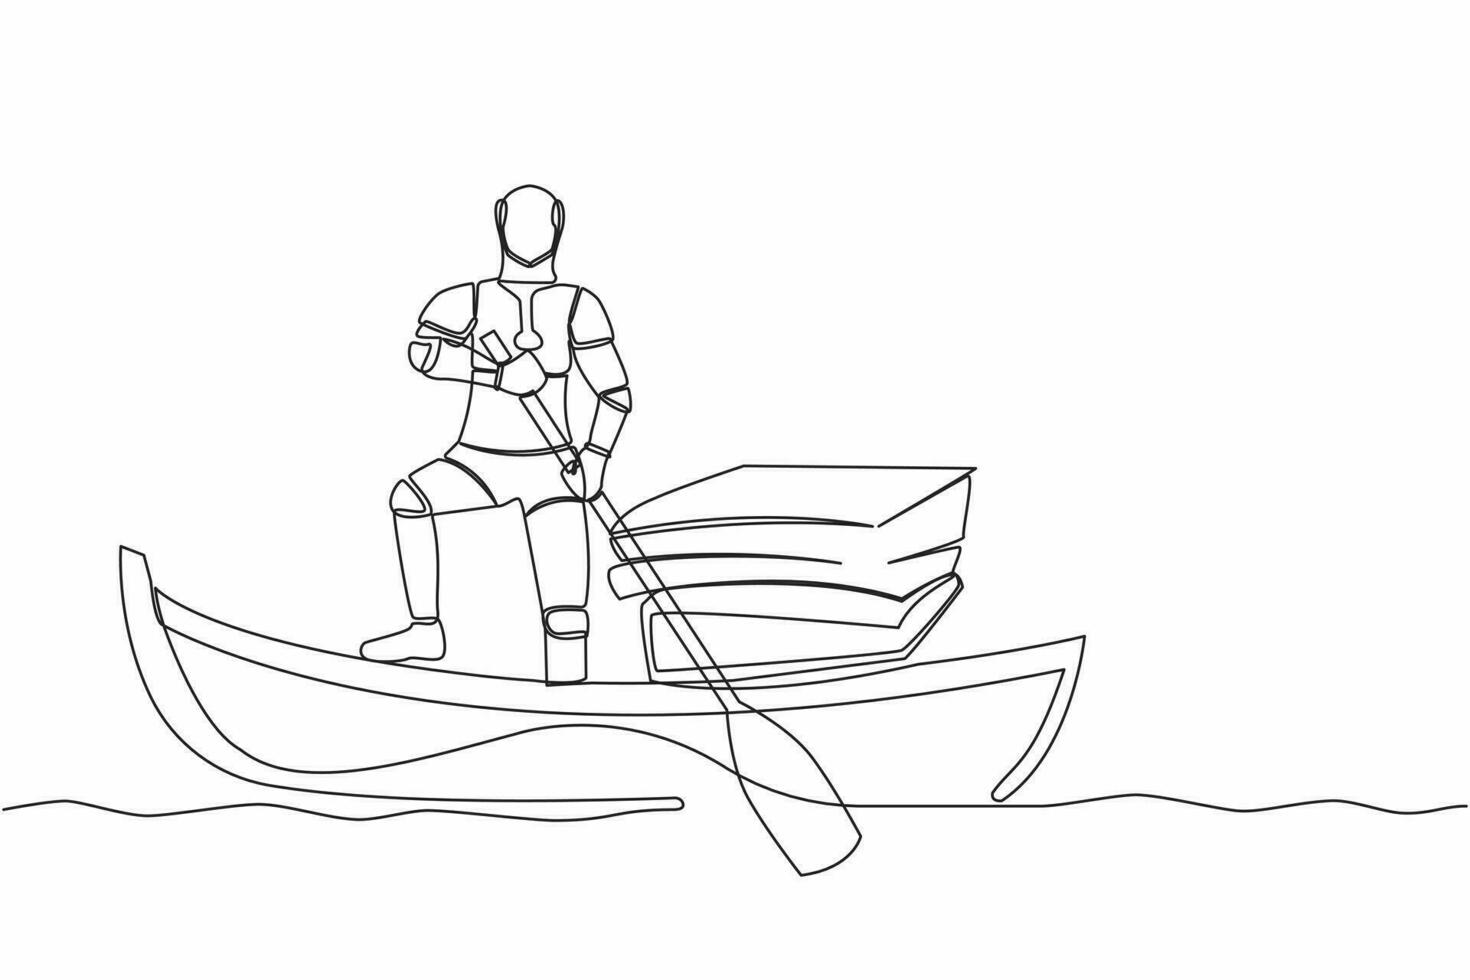 soltero continuo línea dibujo robot navegación lejos en barco con apilar de documentos. gestionar digital documento en tecnología compañía. futuro tecnología desarrollo. uno línea dibujar gráfico diseño vector ilustración